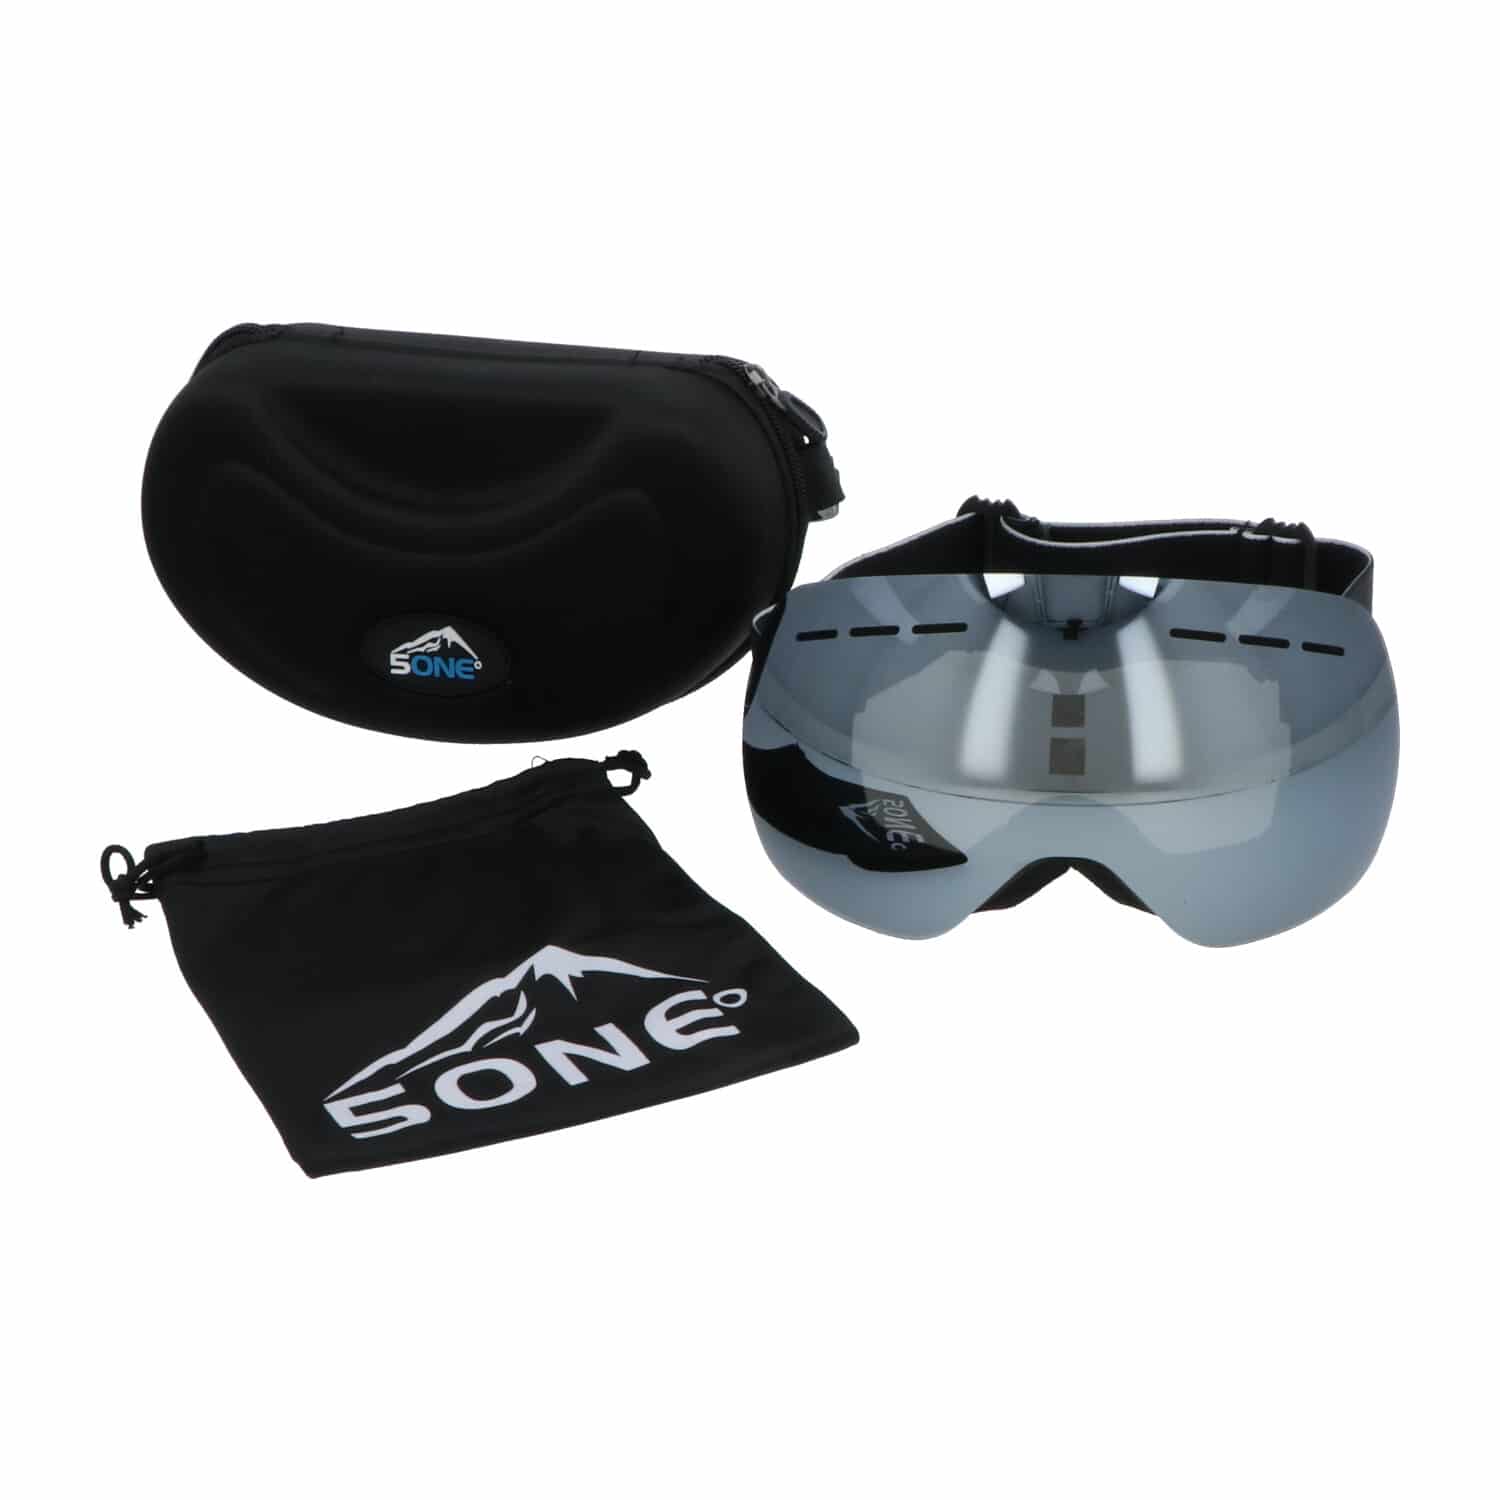 5one® Alpine 1 Silver anticondens skibril met bewaarcase - UV 400